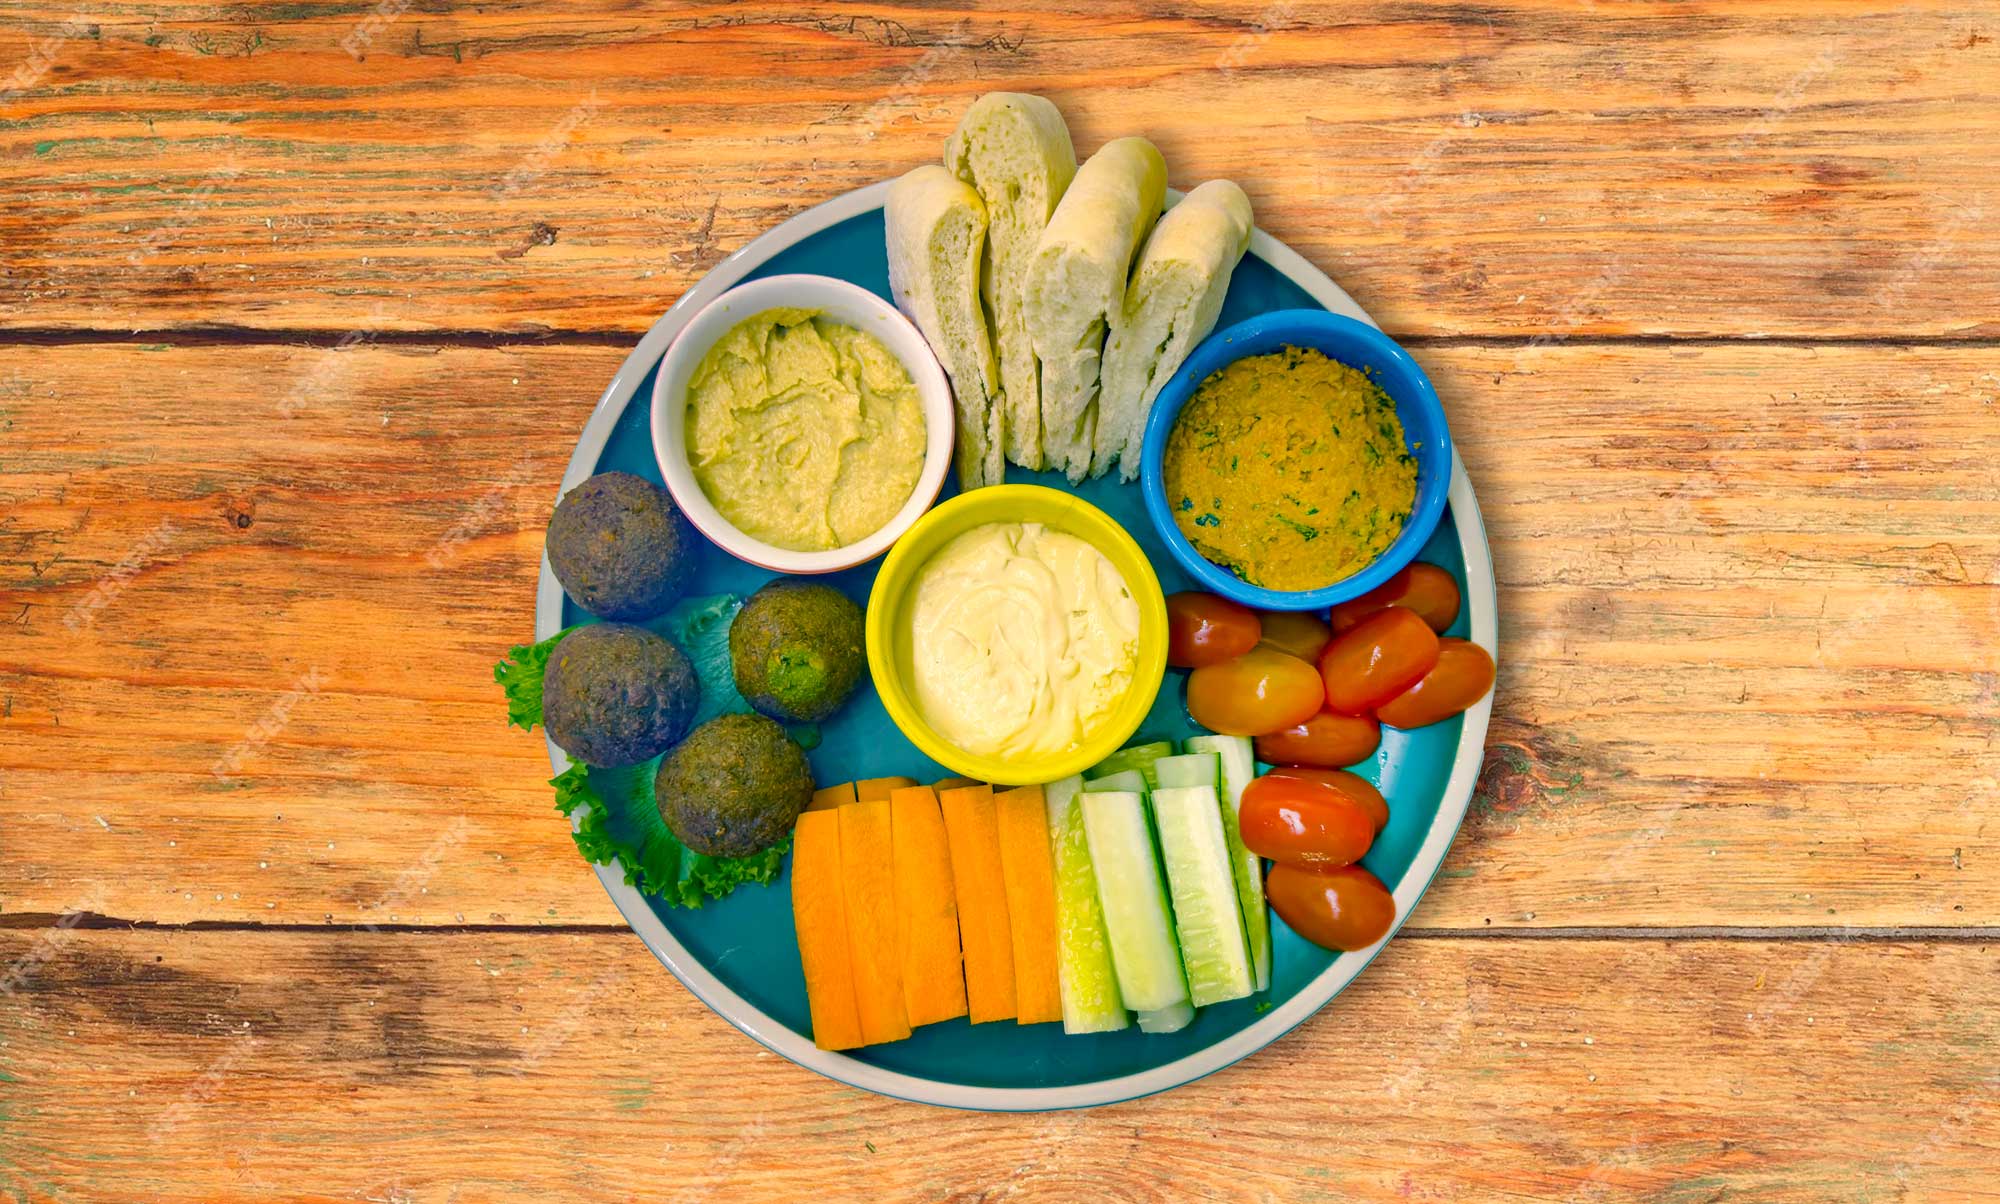 Vegan Platter with Falafel and Hummus